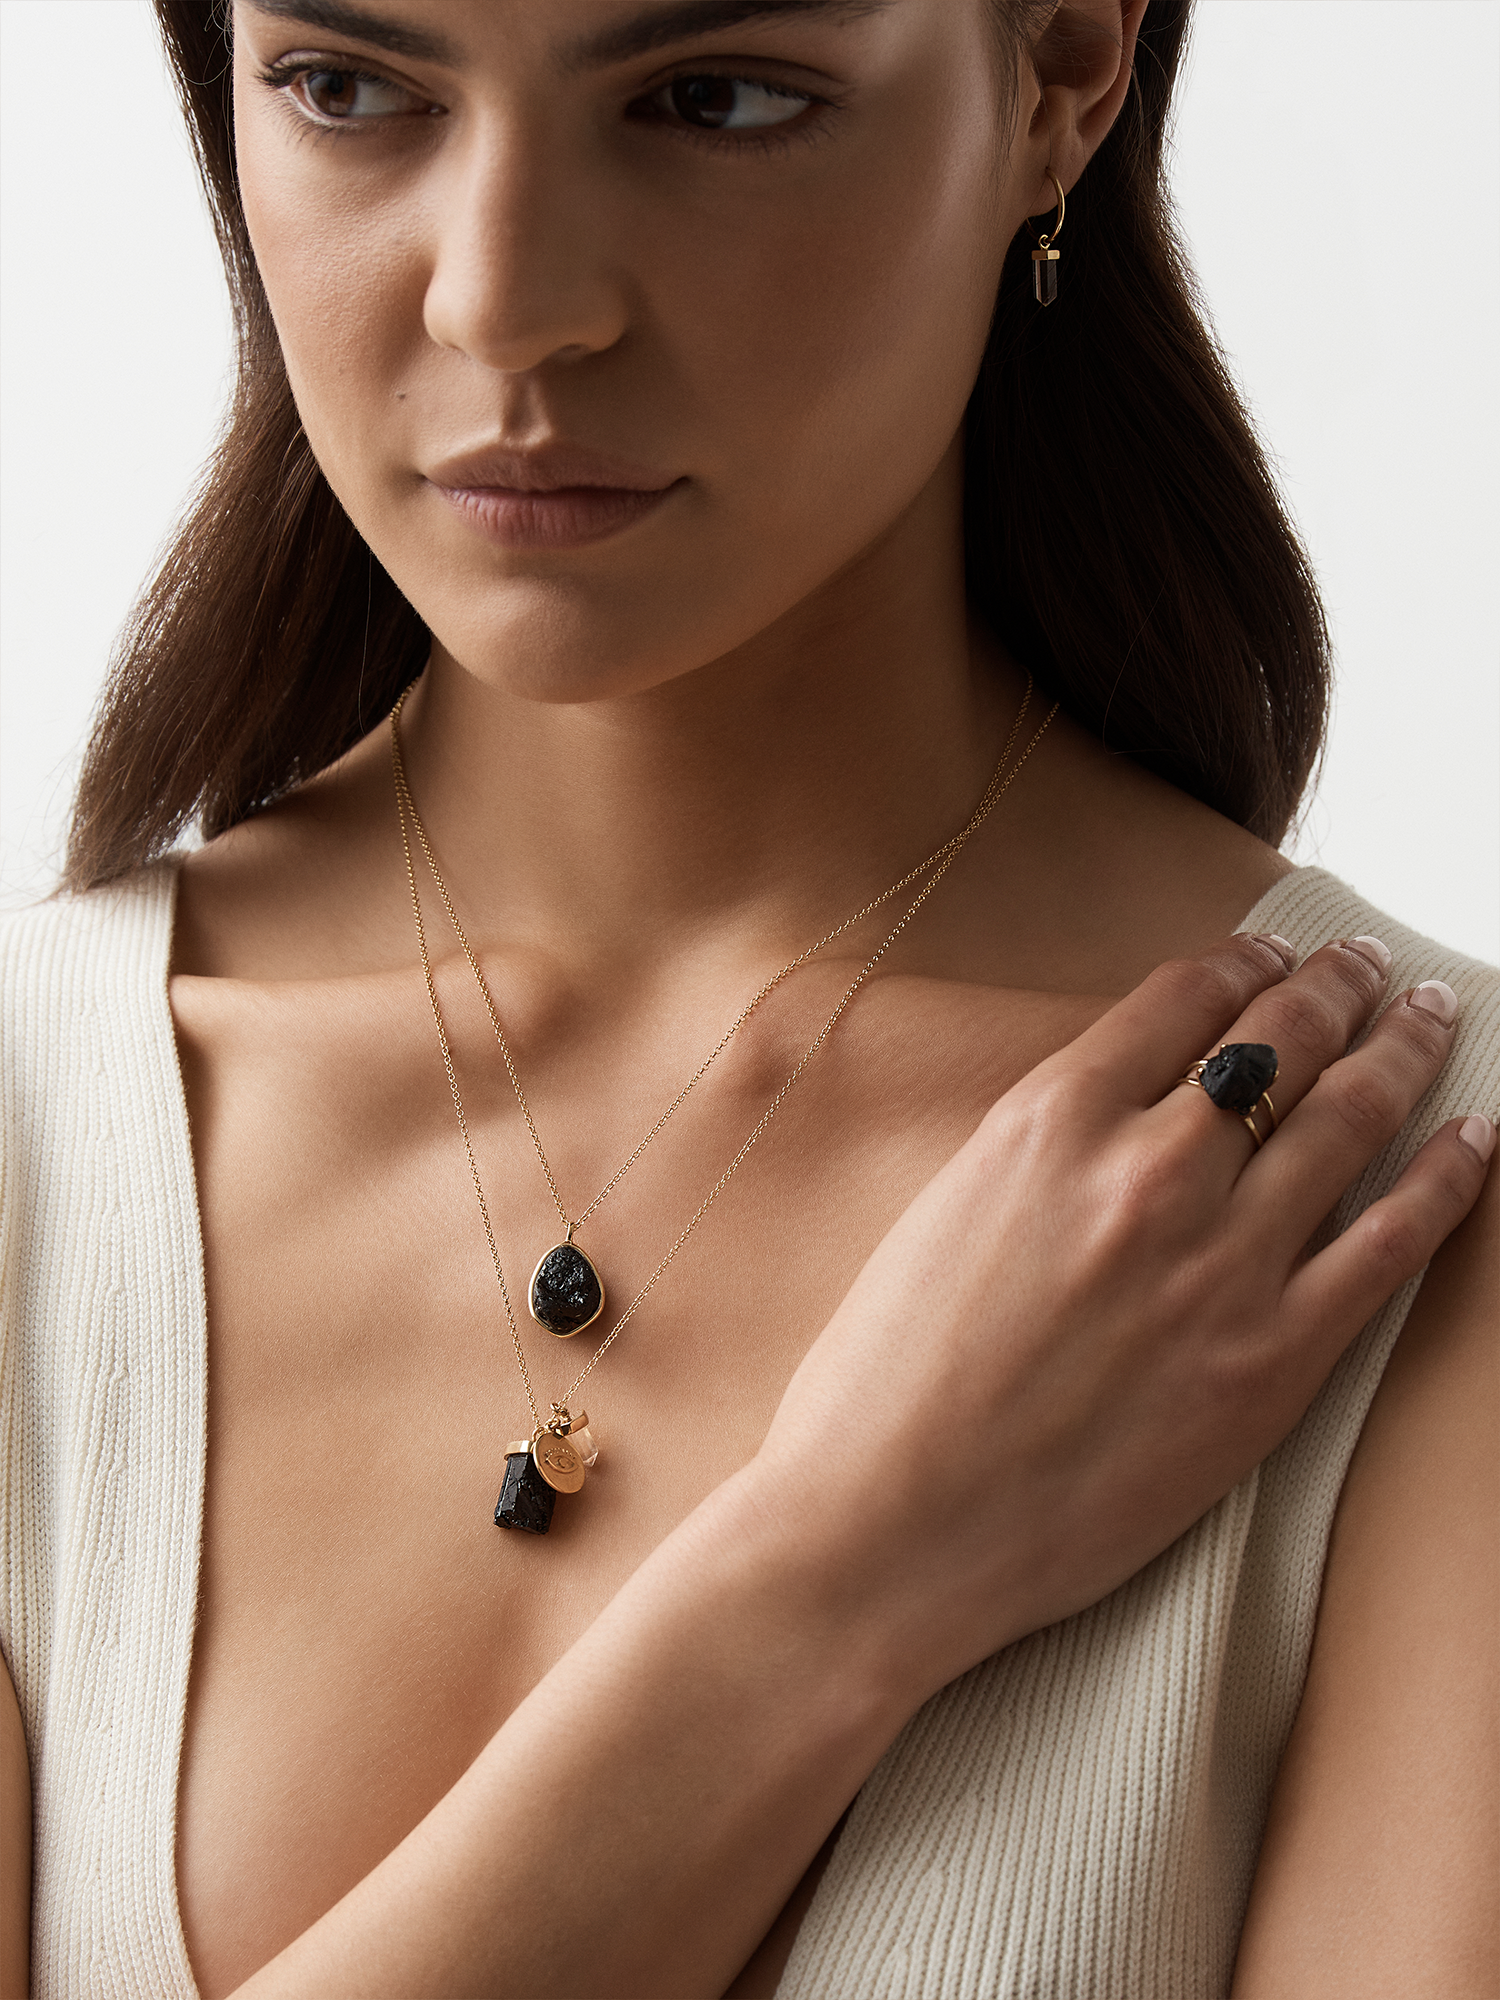 azalea necklace | black tourmaline